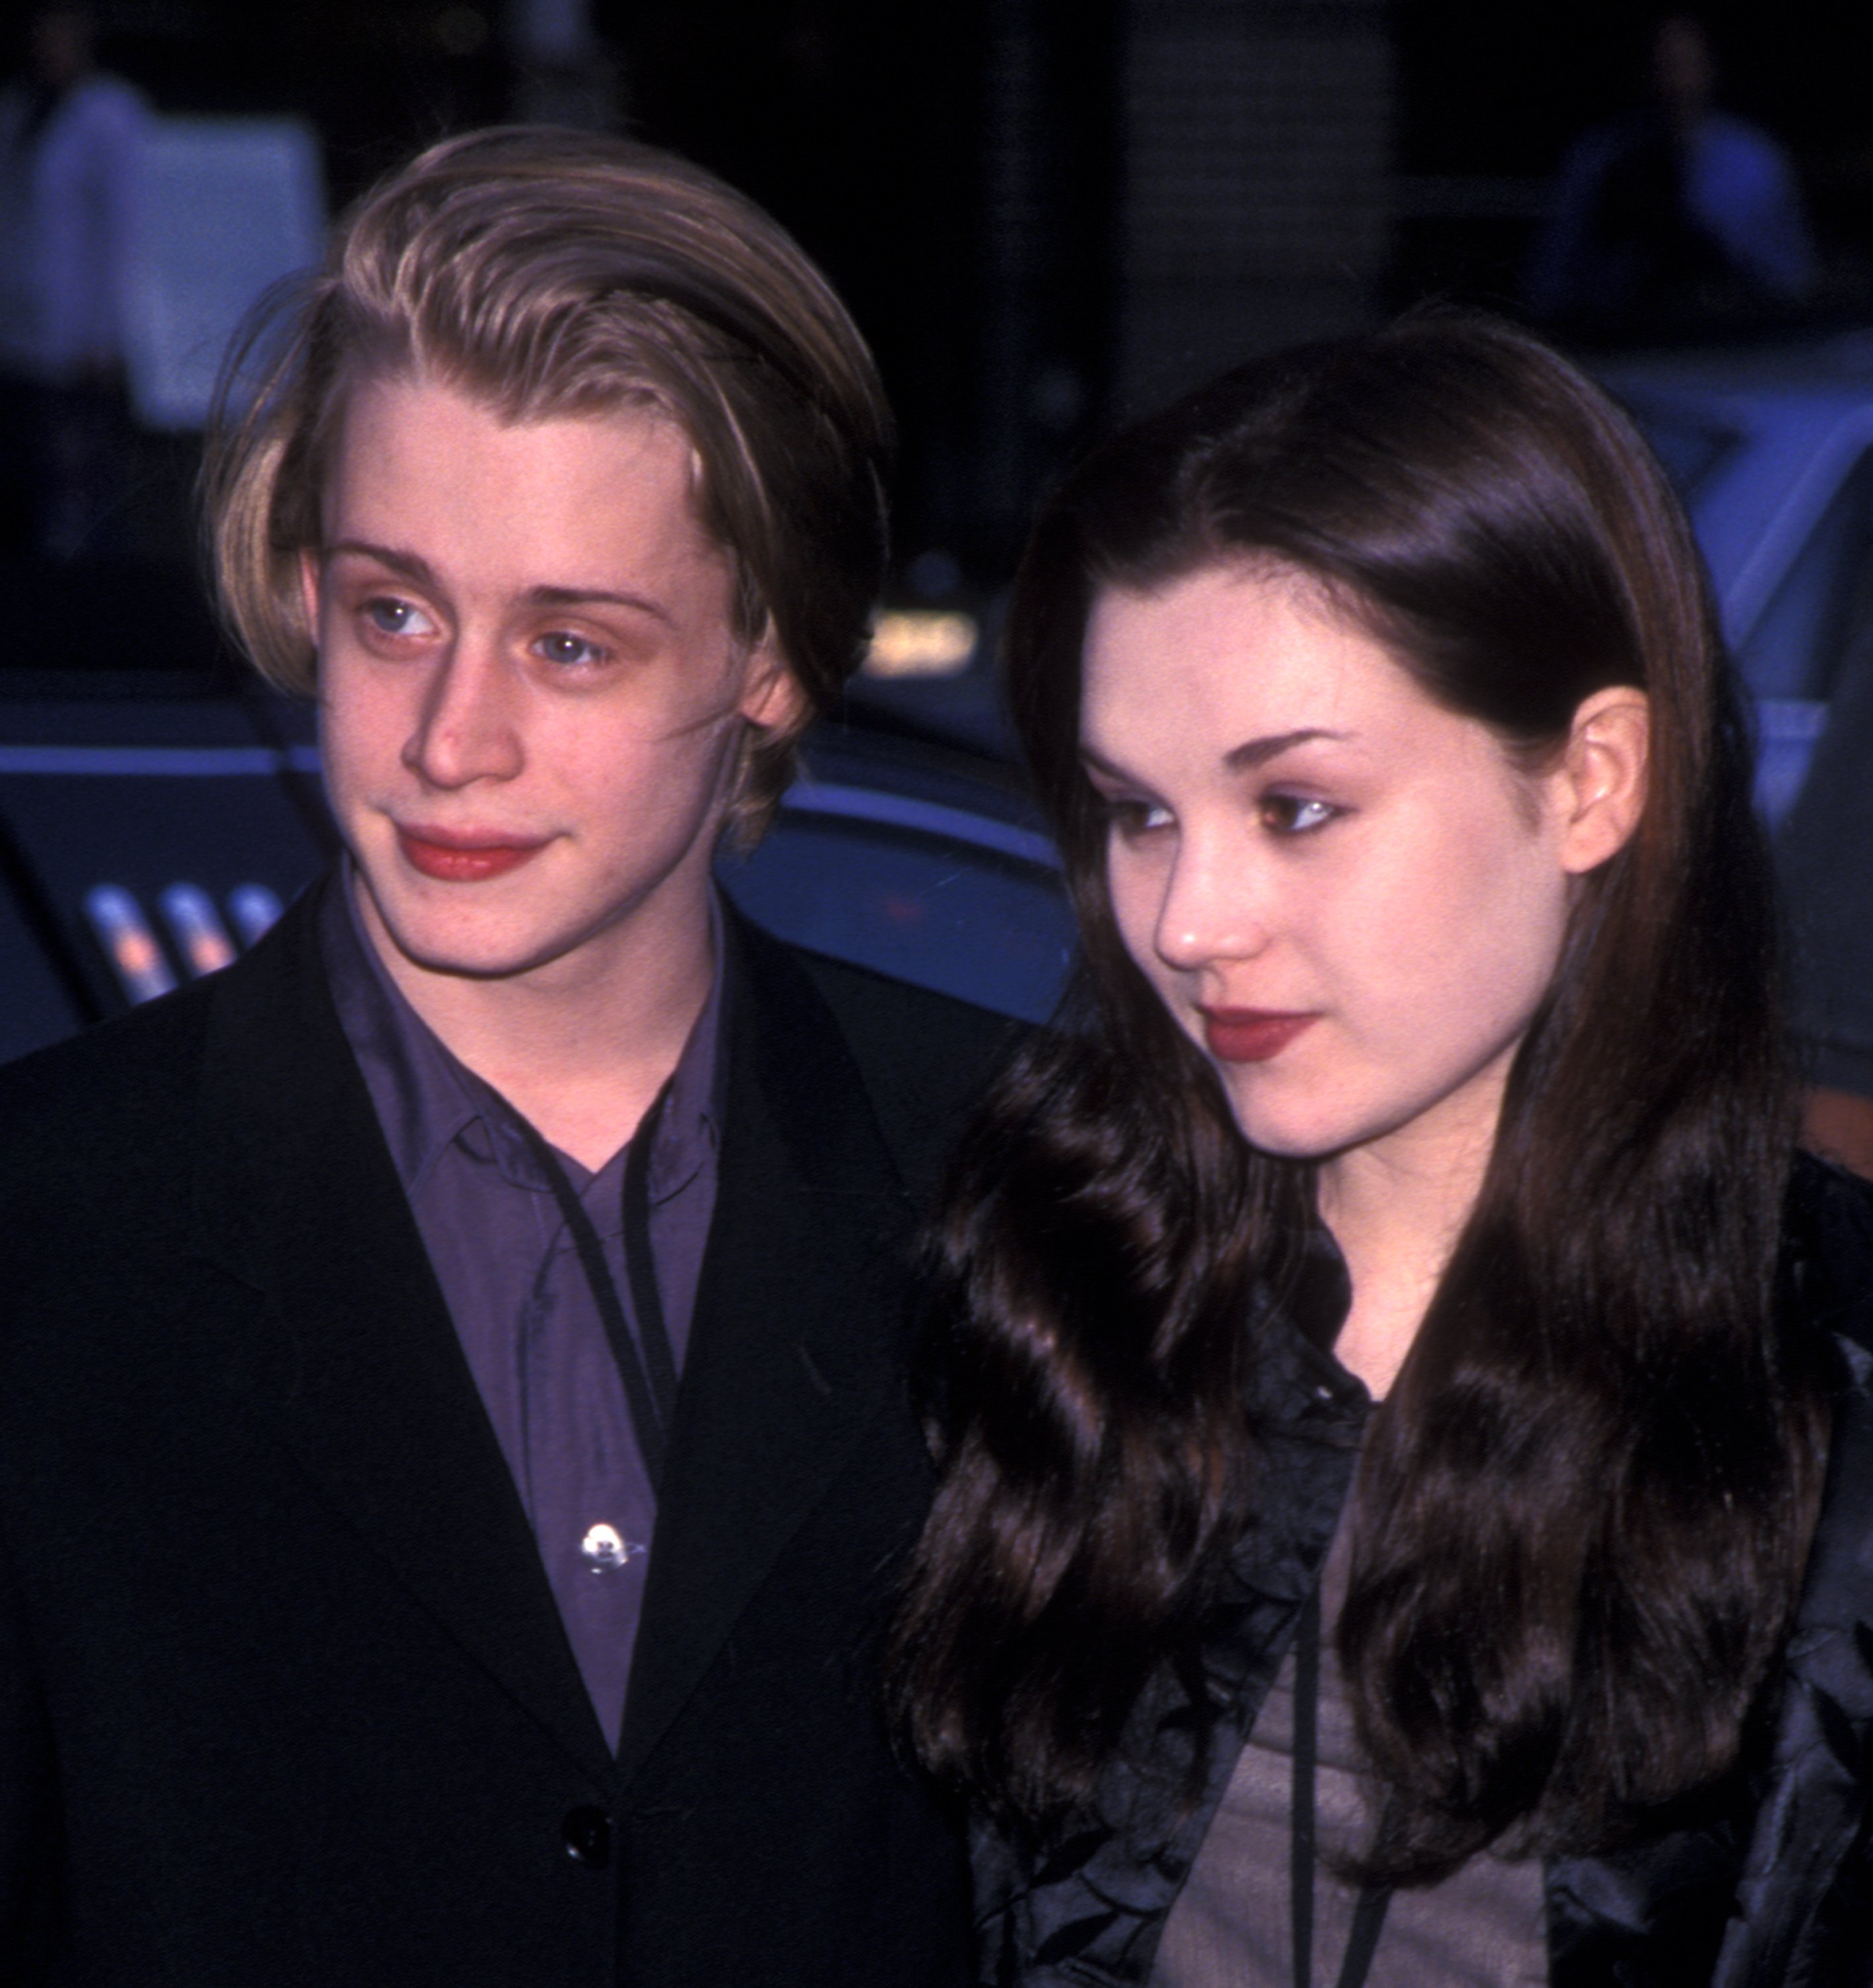 Rachel Miner y Macaulay Culkin en el estreno de "Star Wars Episode I - The Phantom Menace" en Nueva York, el 16 de mayo de 1999. | Foto: Getty Images